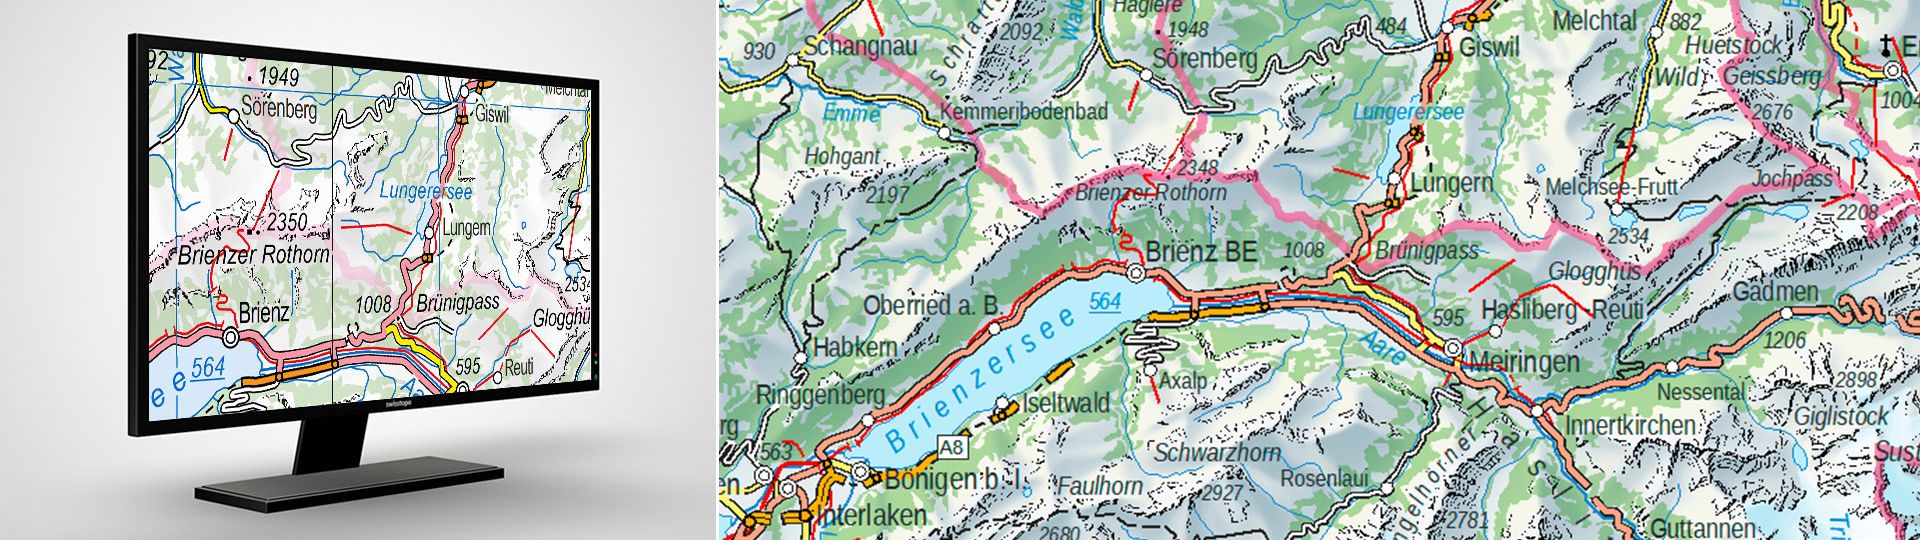 Swiss Map Vector 500: swiss national vector map 1:500,000